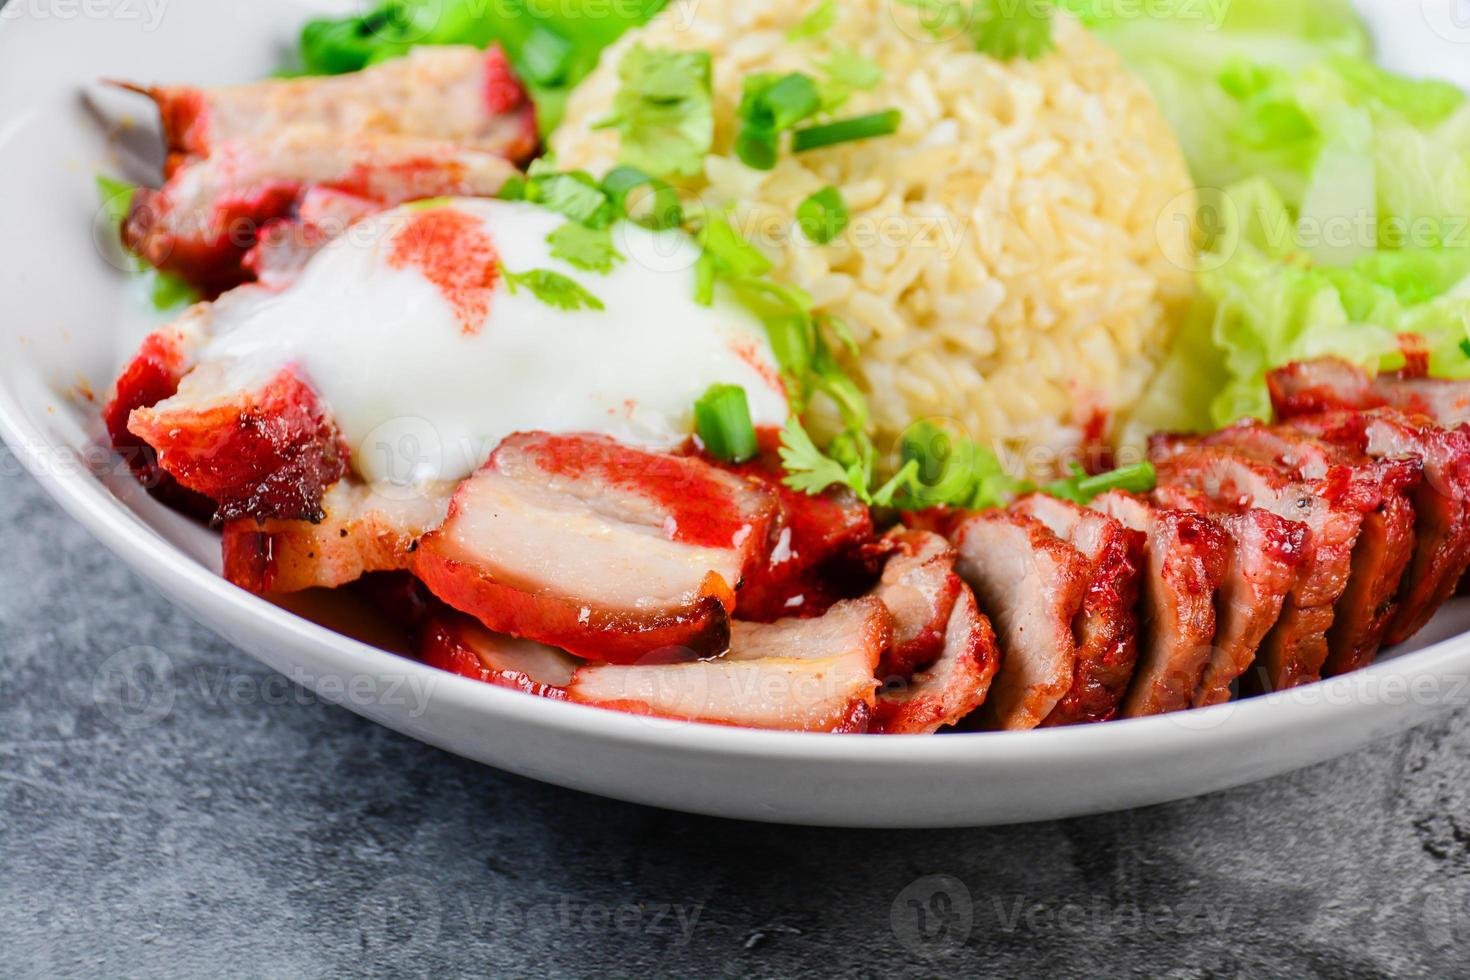 porco vermelho grelhado e carne de porco crocante em molho vermelho, servido com arroz e legumes na chapa branca. foto